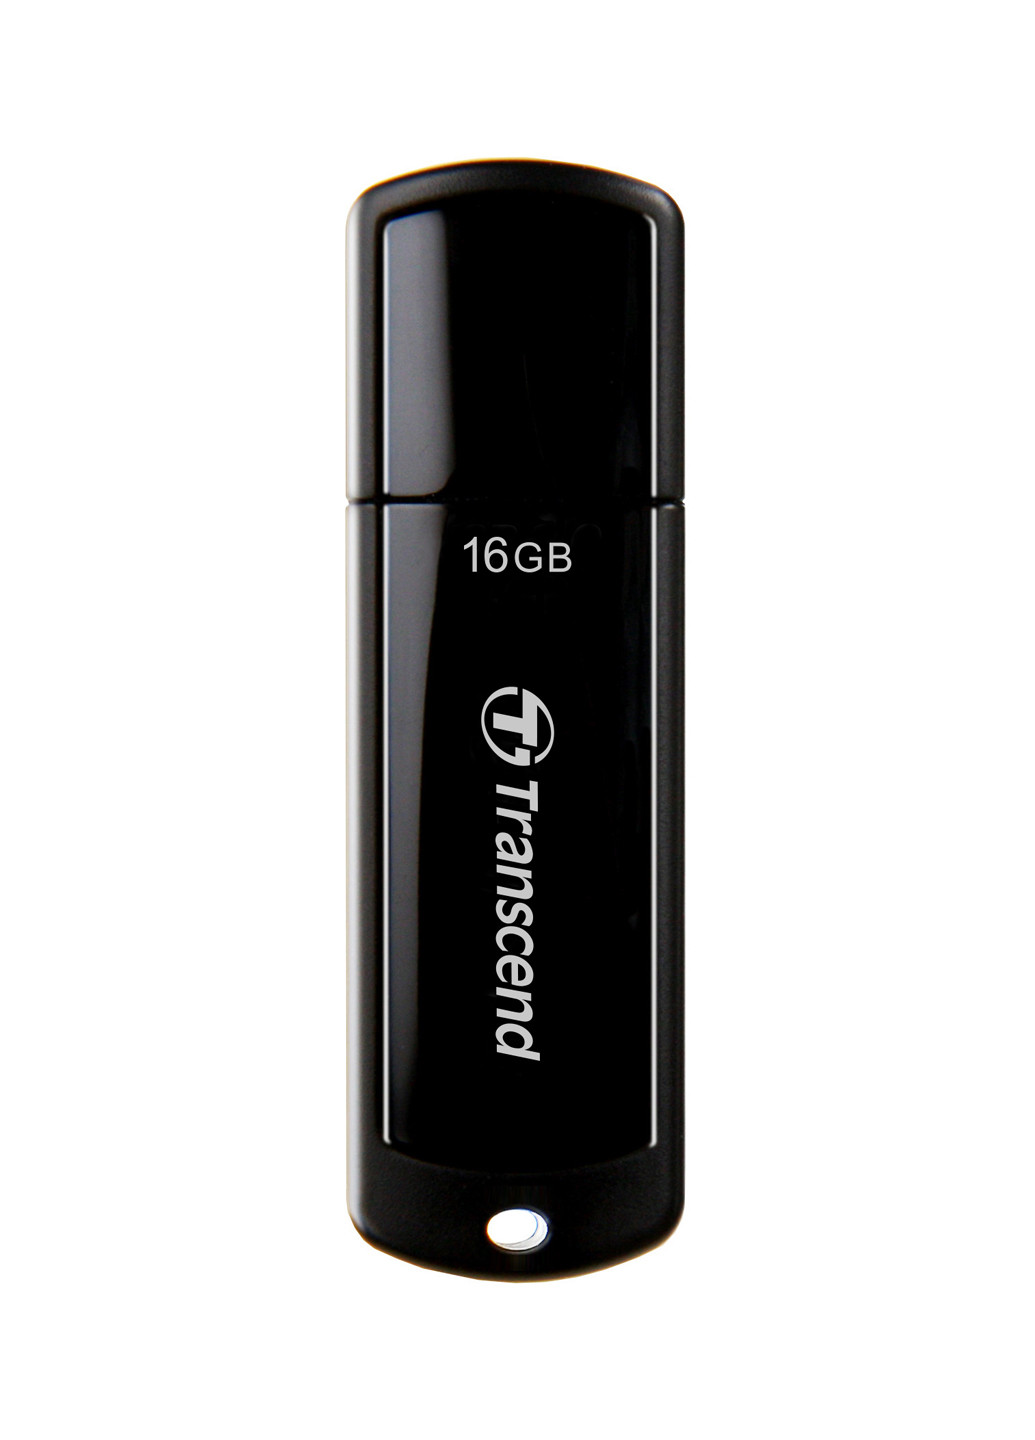 Флеш память USB JetFlash 700 16GB USB 3.0 Black (TS16GJF700) Transcend Флеш память USB Transcend JetFlash 700 16GB USB 3.0 Black (TS16GJF700) чёрные